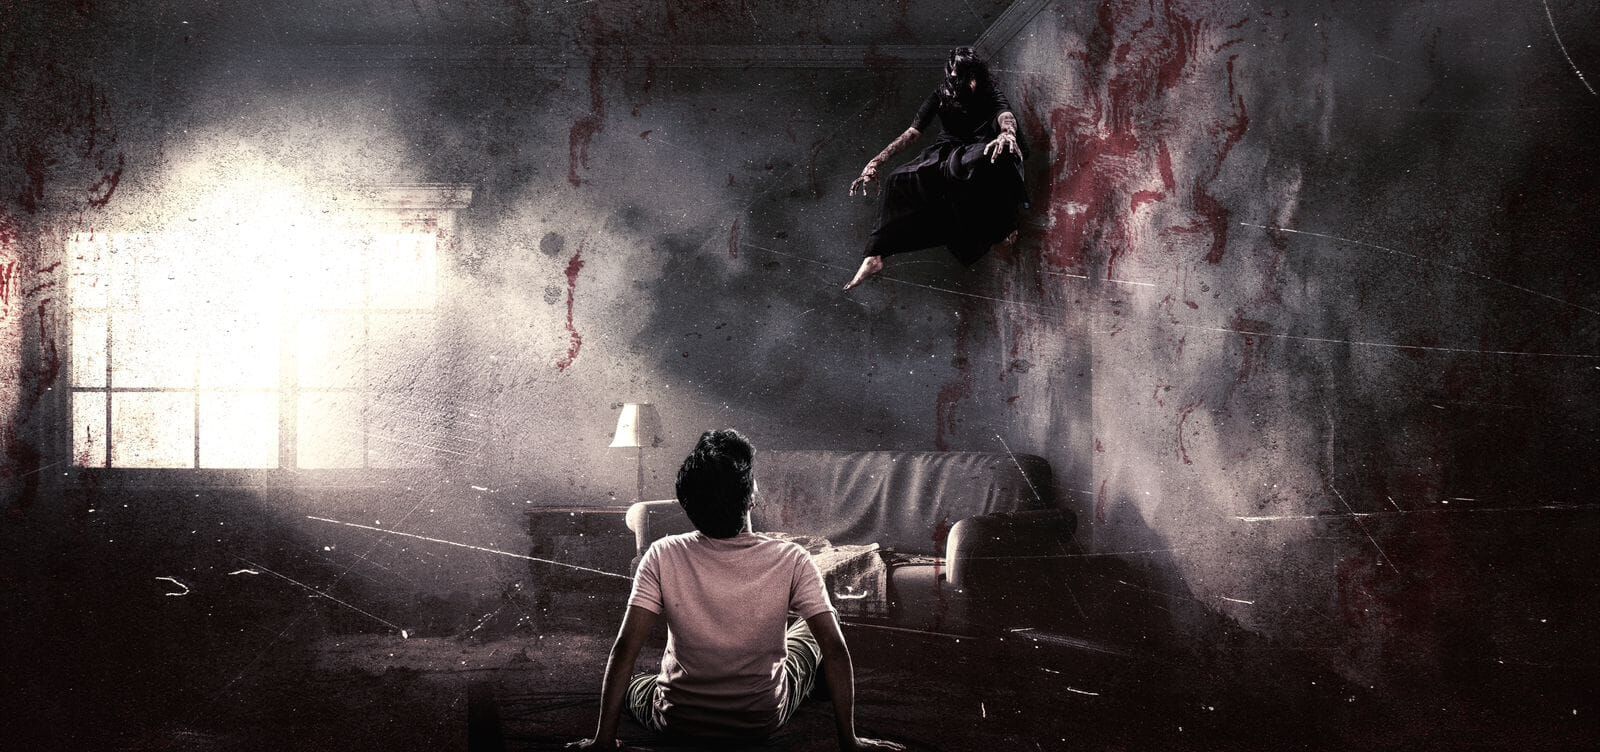 ‘Raa Raja’ trailer impresses with unique horror thriller concept